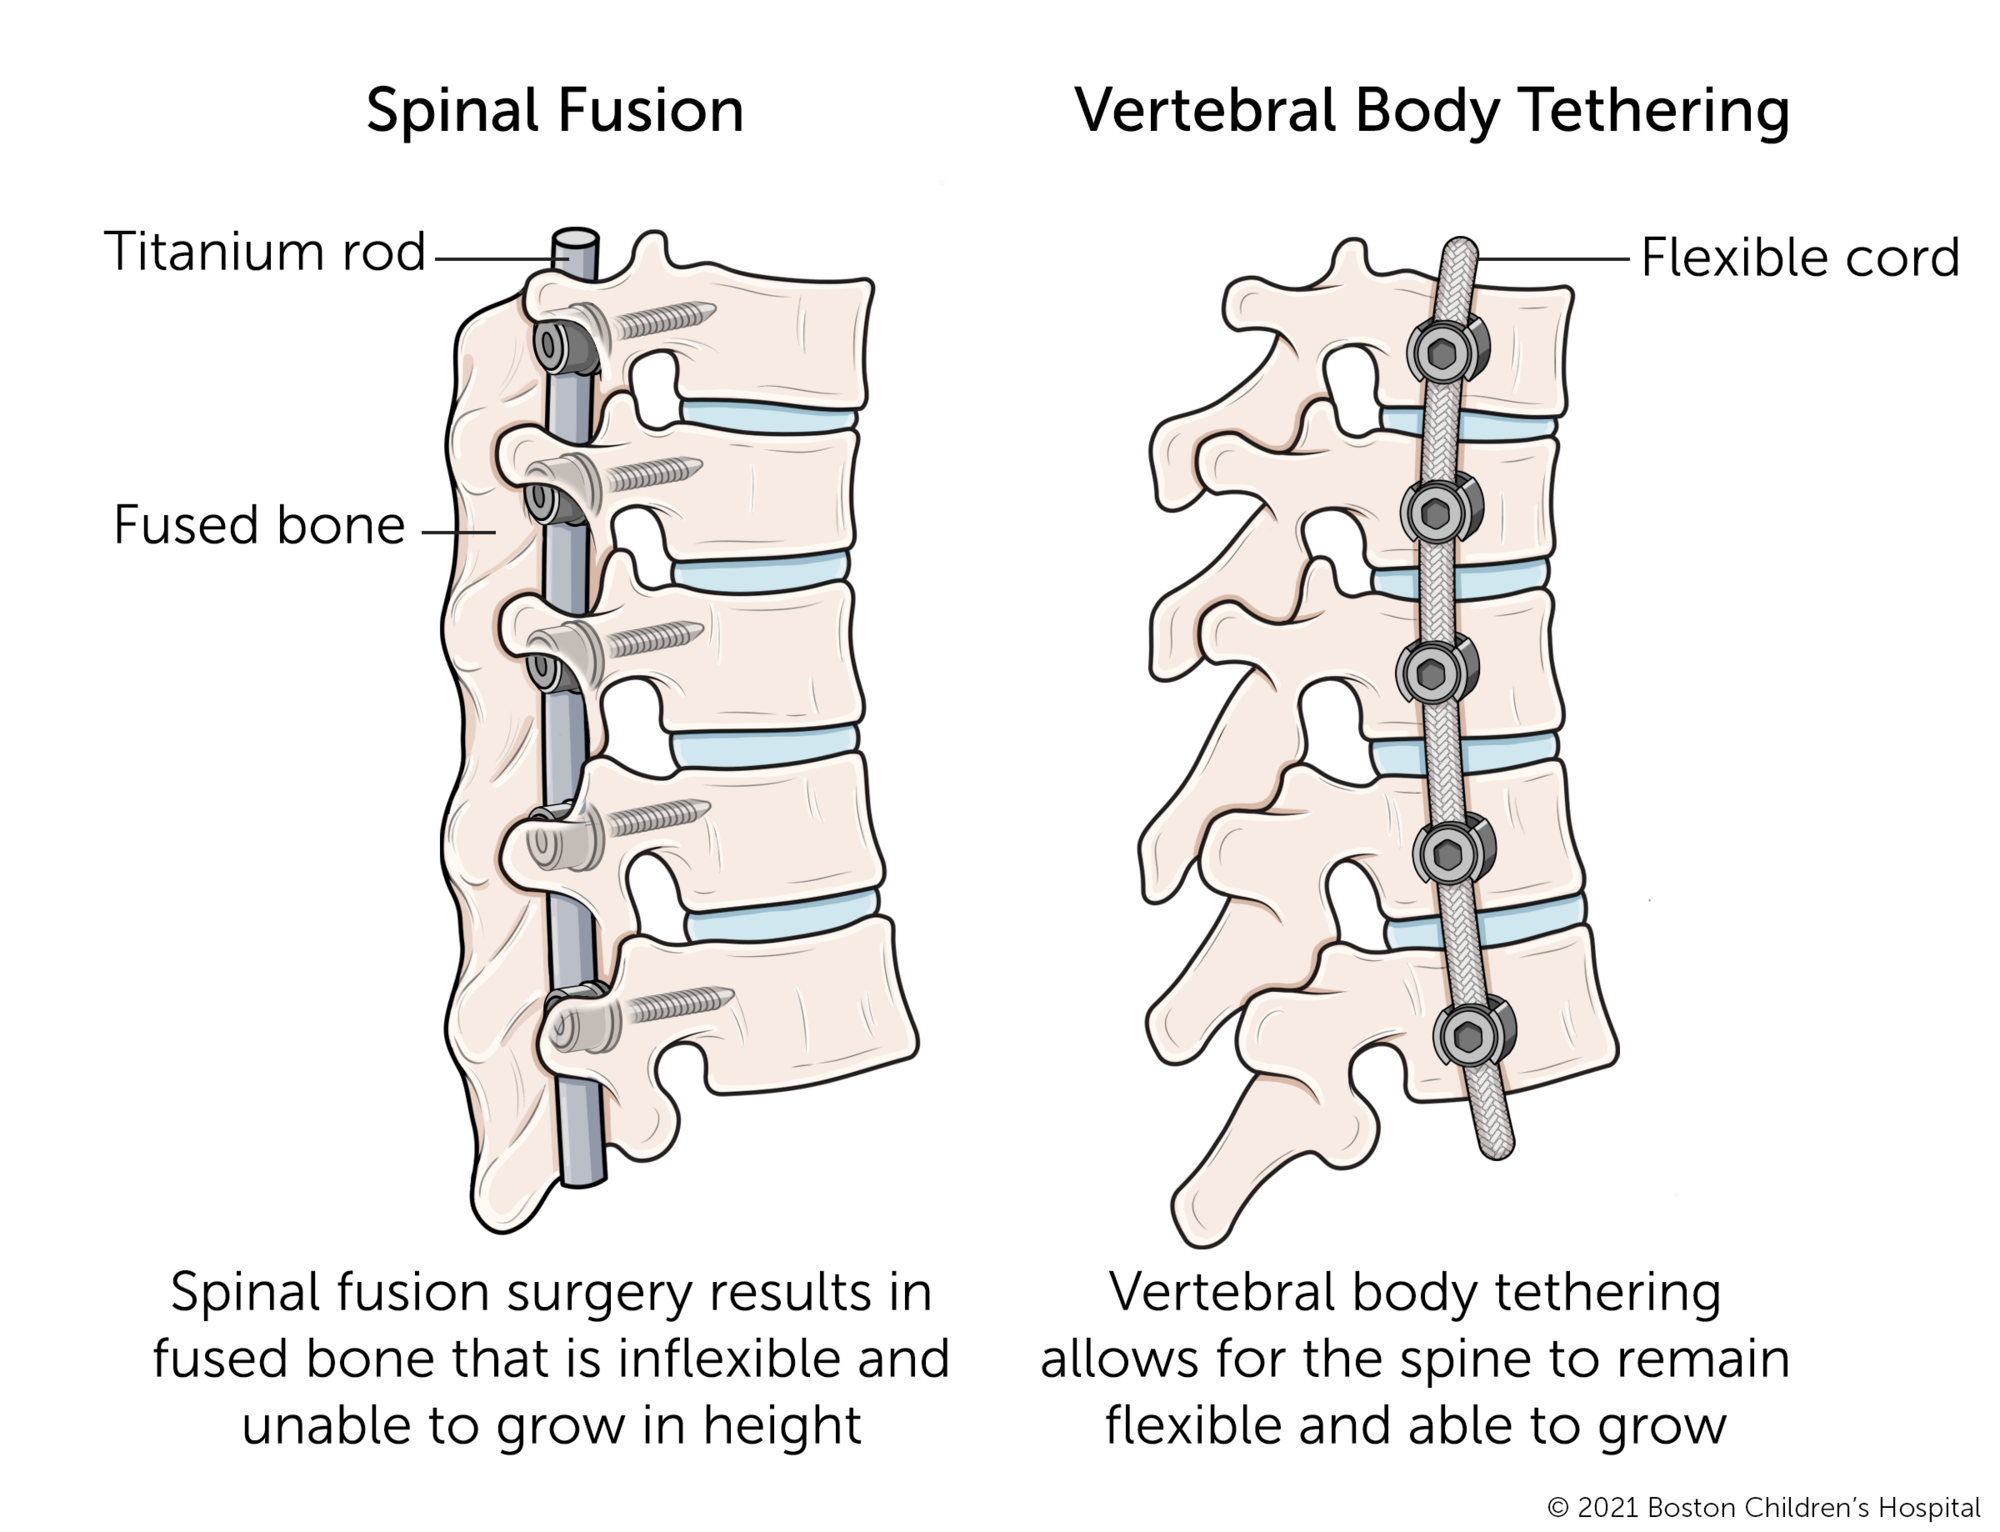 与椎体束缚相比，脊柱融合。脊柱融合手术导致融合的骨骼不灵活，无法高度增长。椎体束缚允许脊柱保持柔韧且能够生长。